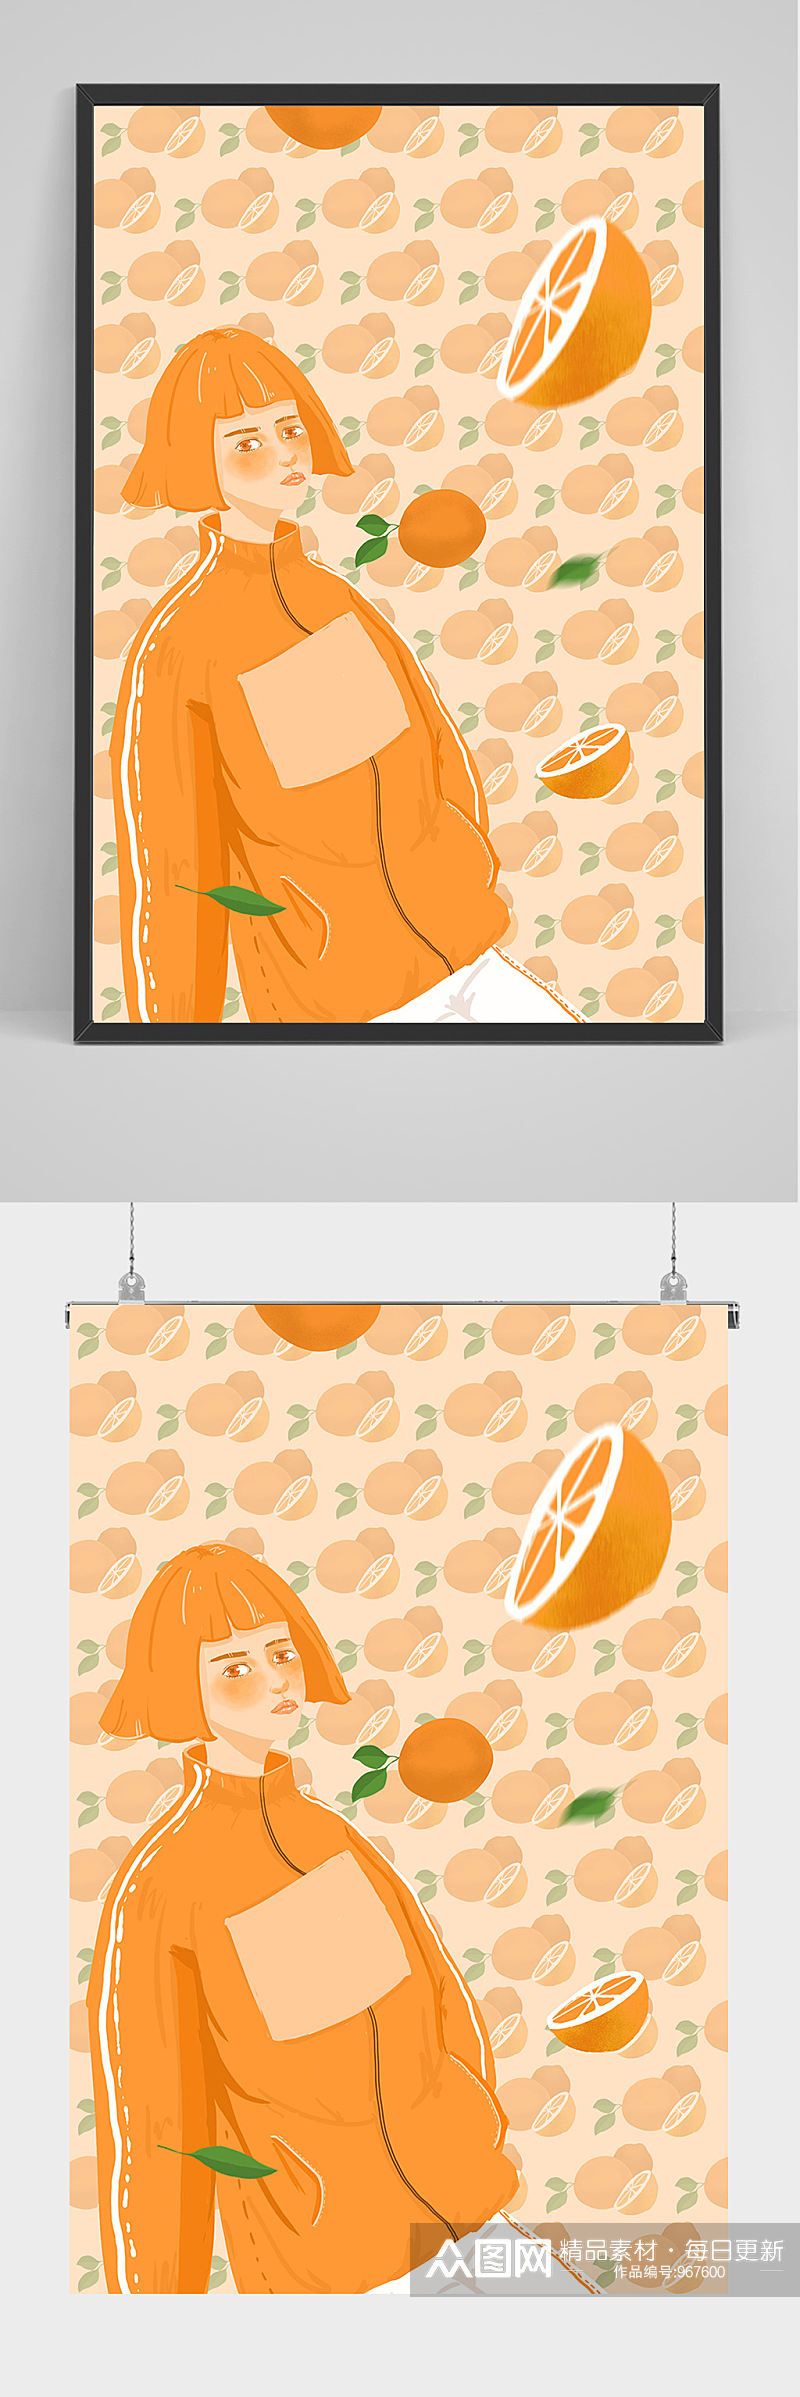 女子吃橘子手绘插画设计素材